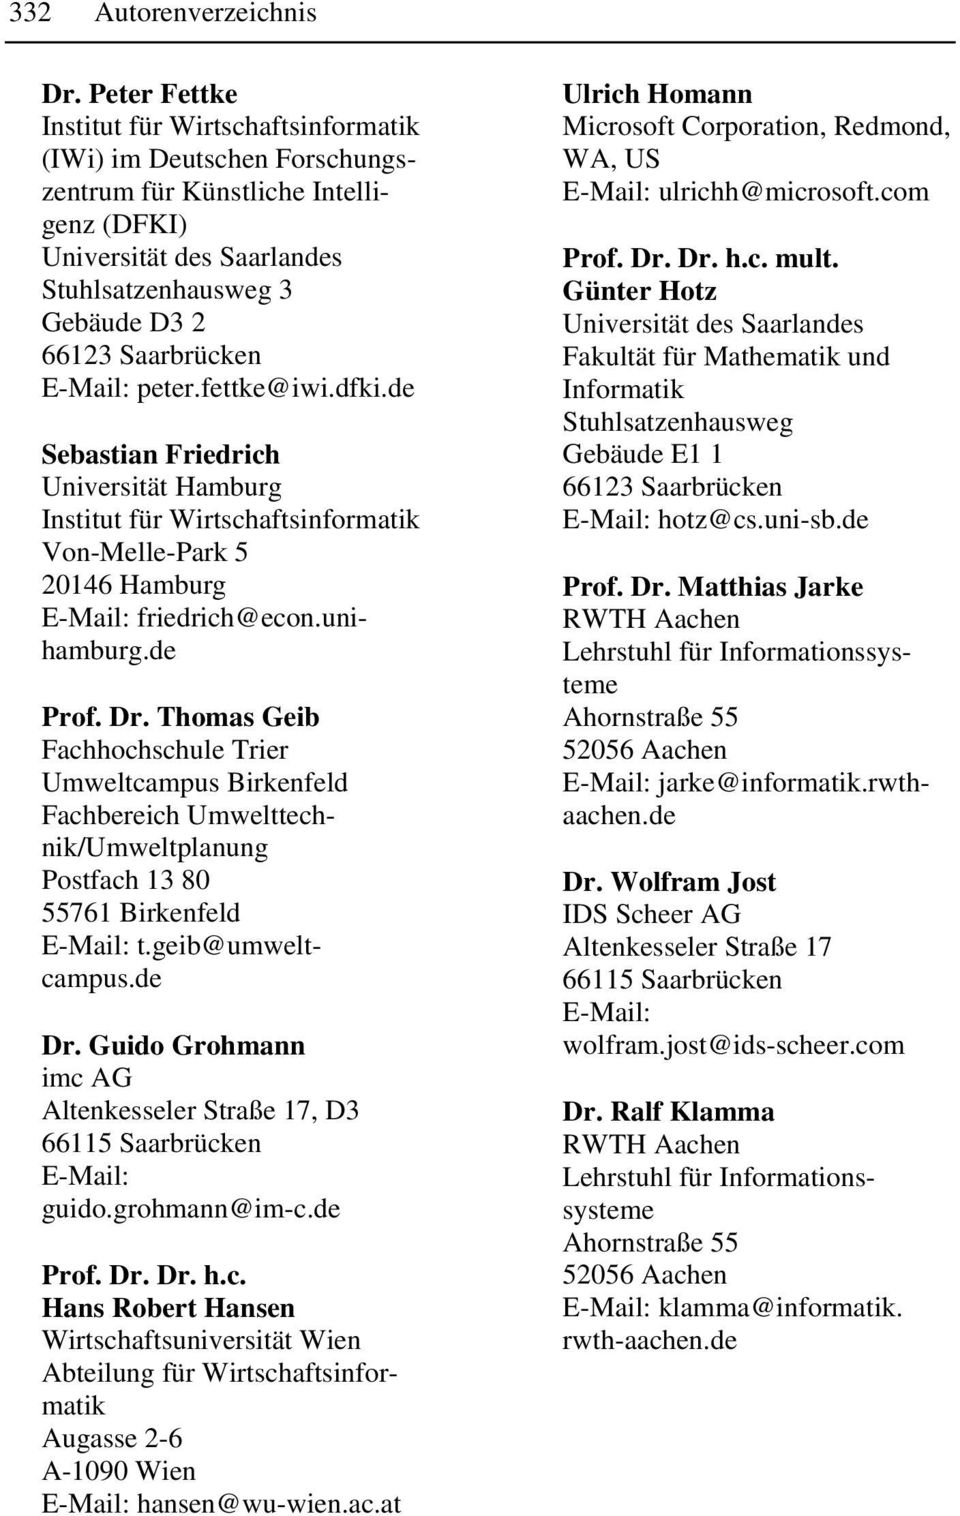 Thomas Geib Fachhochschule Trier Umweltcampus Birkenfeld Fachbereich Umwelttechnik/Umweltplanung Postfach 13 80 55761 Birkenfeld t.geib@umweltcampus.de Dr. Guido Grohmann, D3 guido.grohmann@im-c.